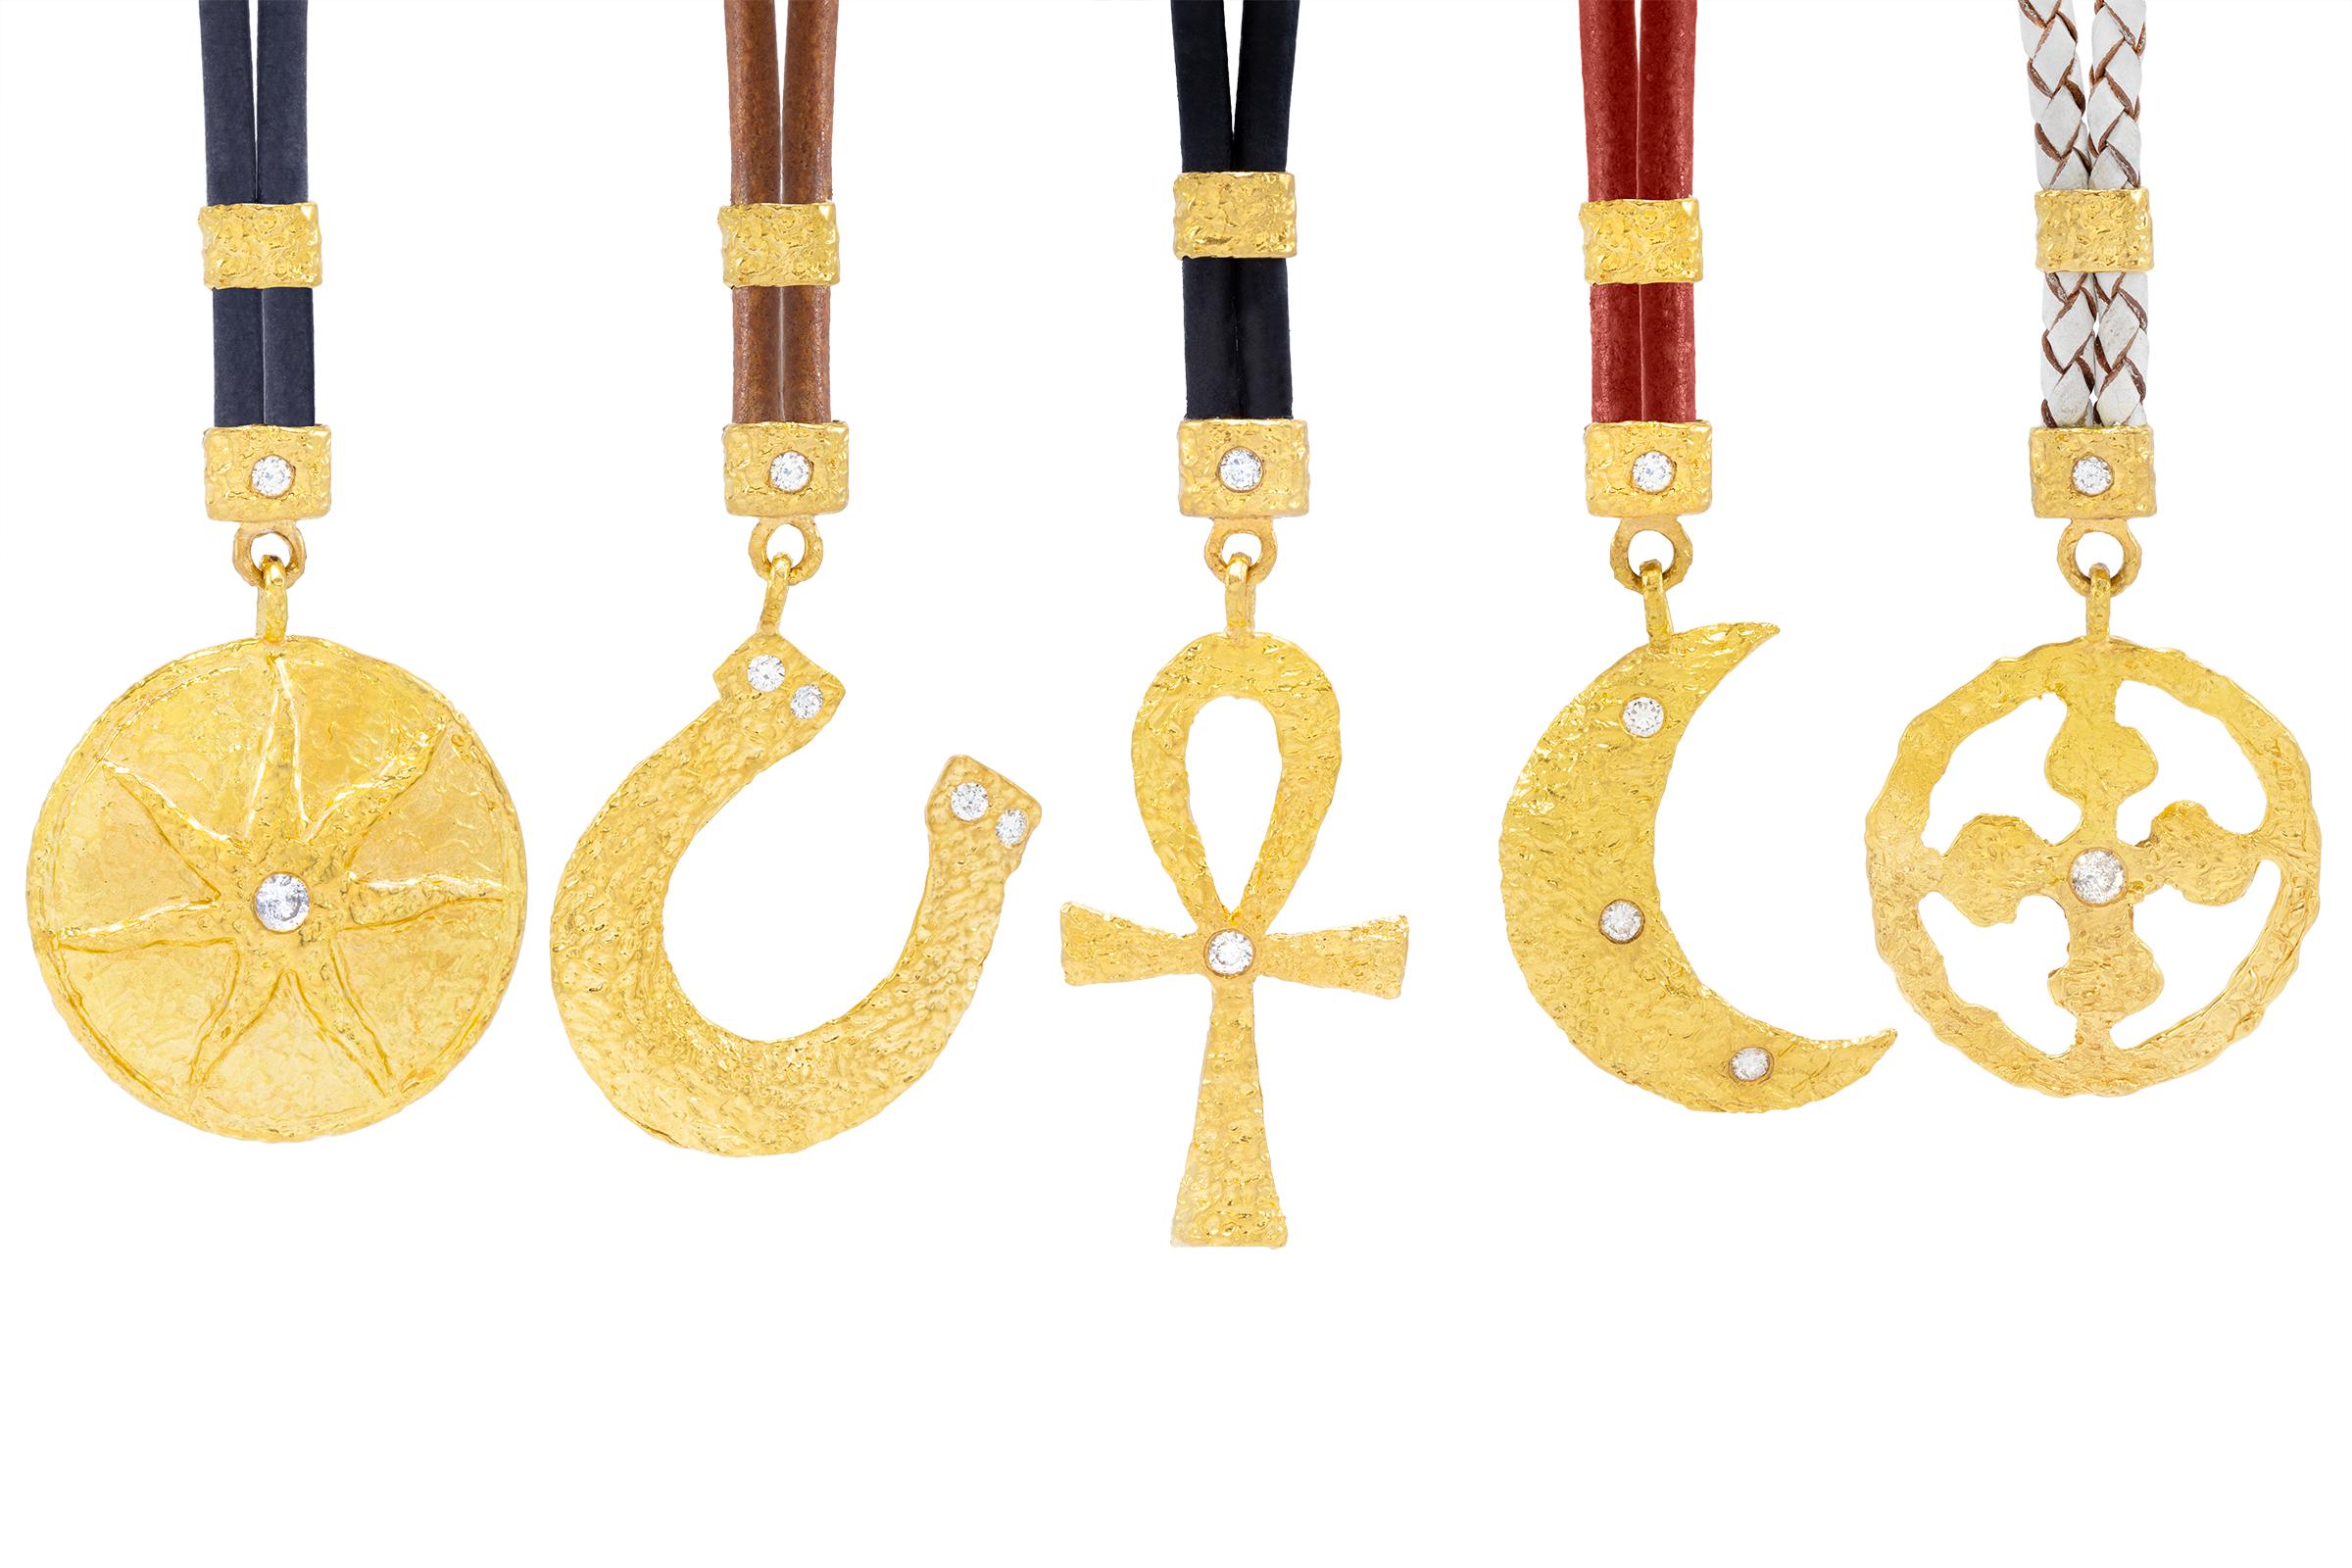 Allegra Sunburst Pendant in 22k Gold, by Tagili For Sale 2